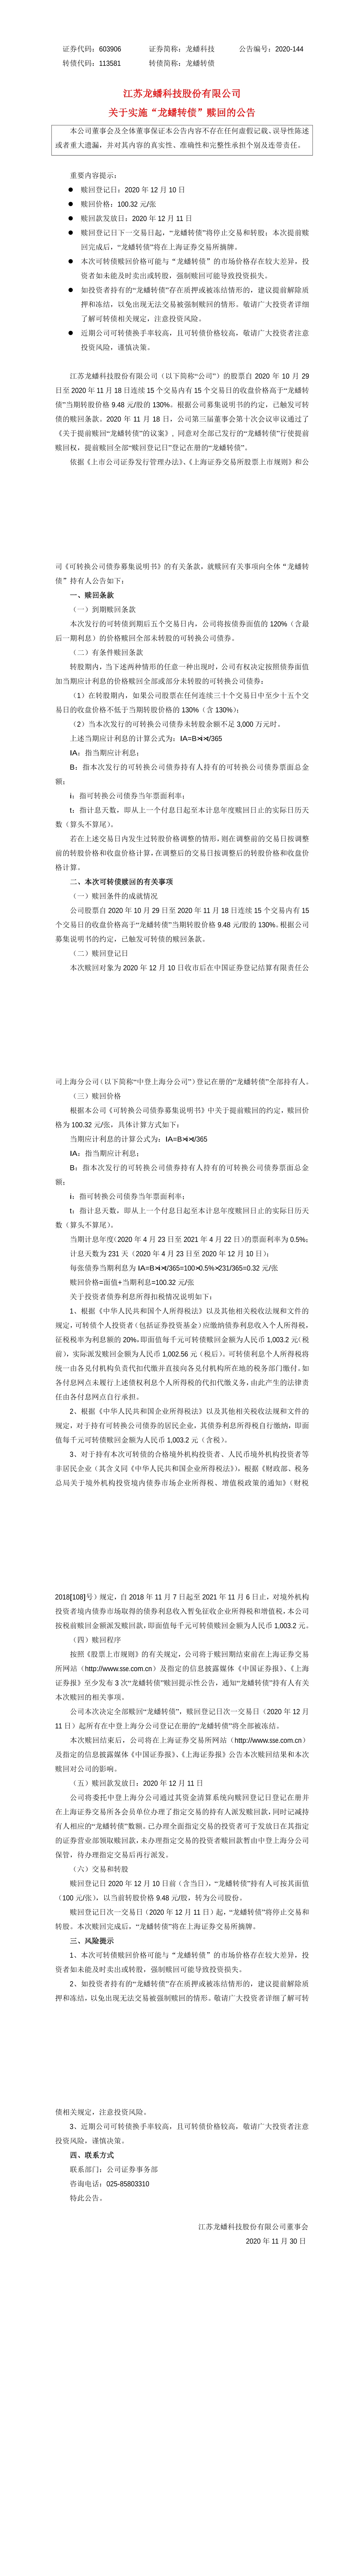 江苏龙蟠科技股份有限公司关于实施龙蟠转债赎回的公告